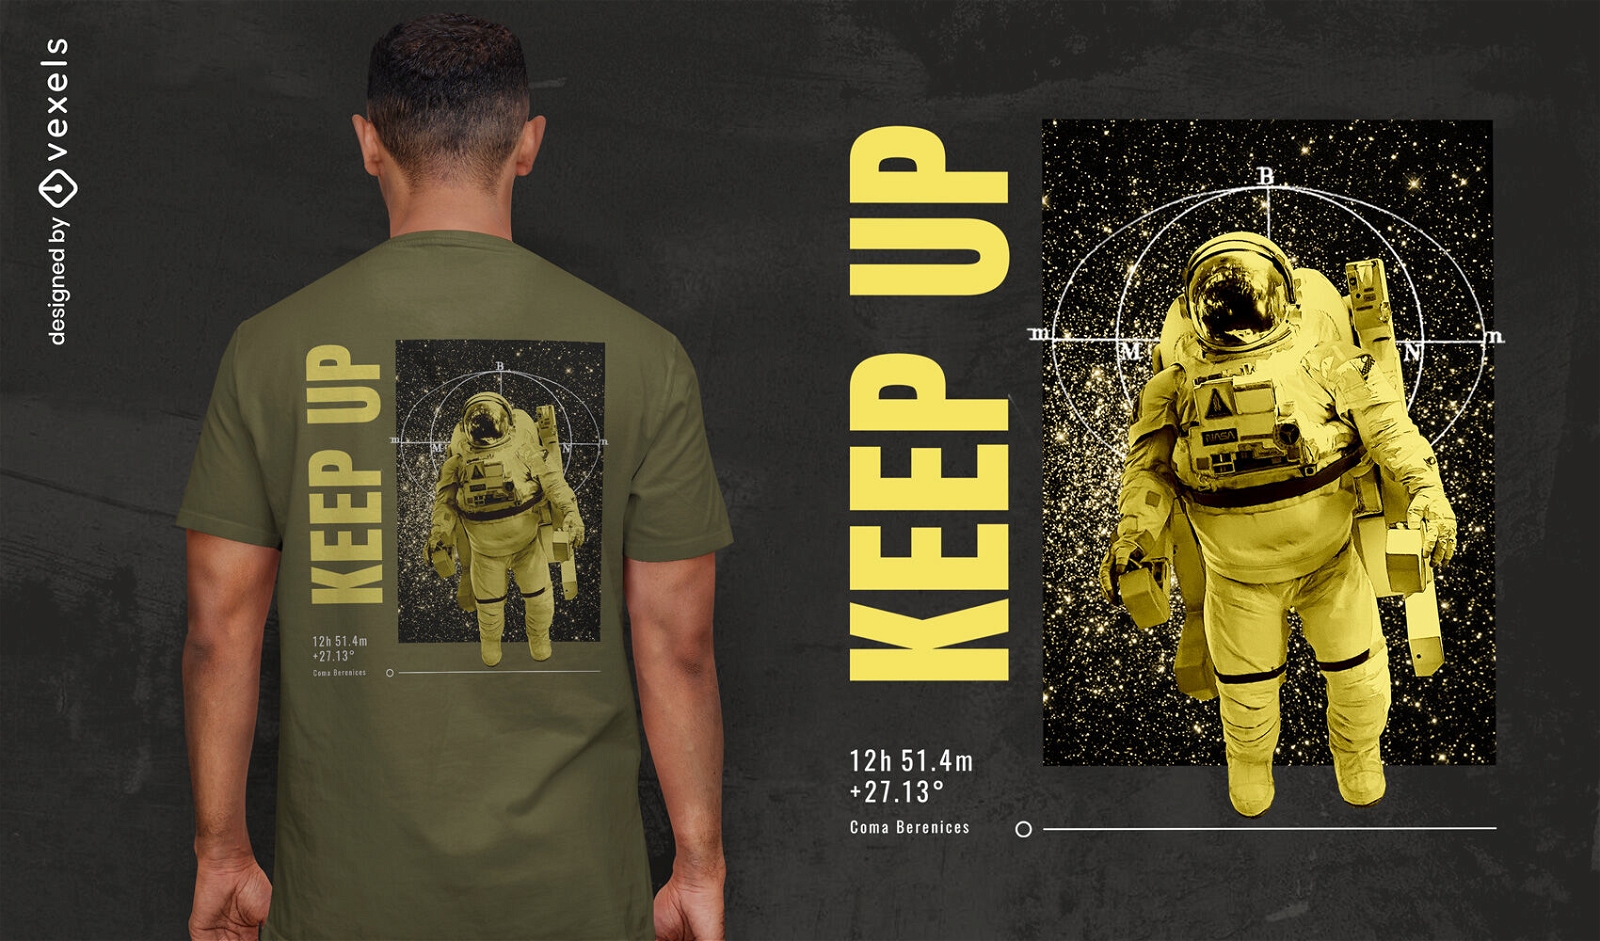 Dise?o de camiseta de astronauta flotando en el espacio.